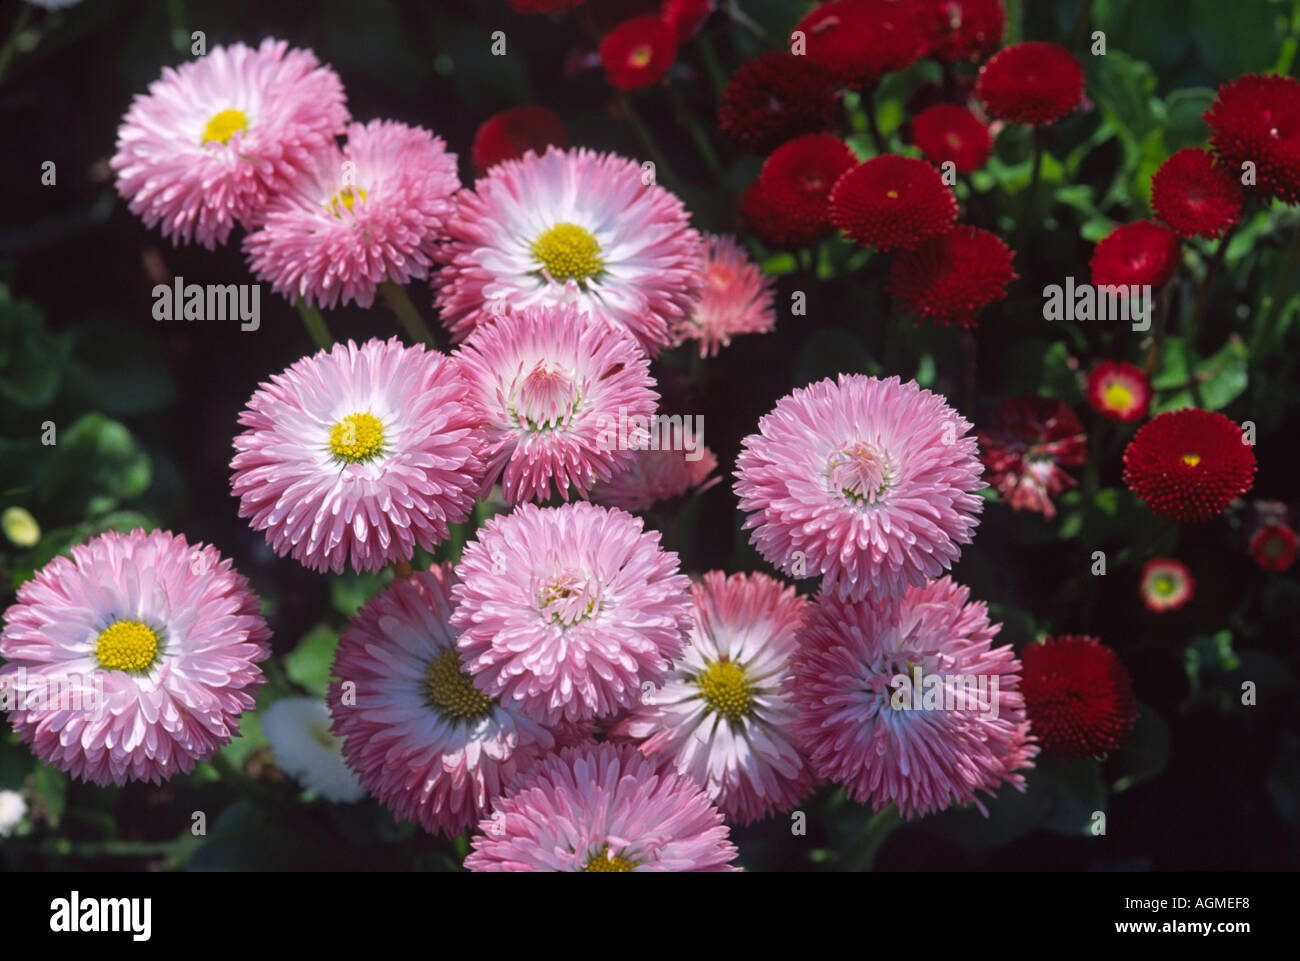 Rosa e bianche margherite coltivate nel letto di fiori Foto Stock